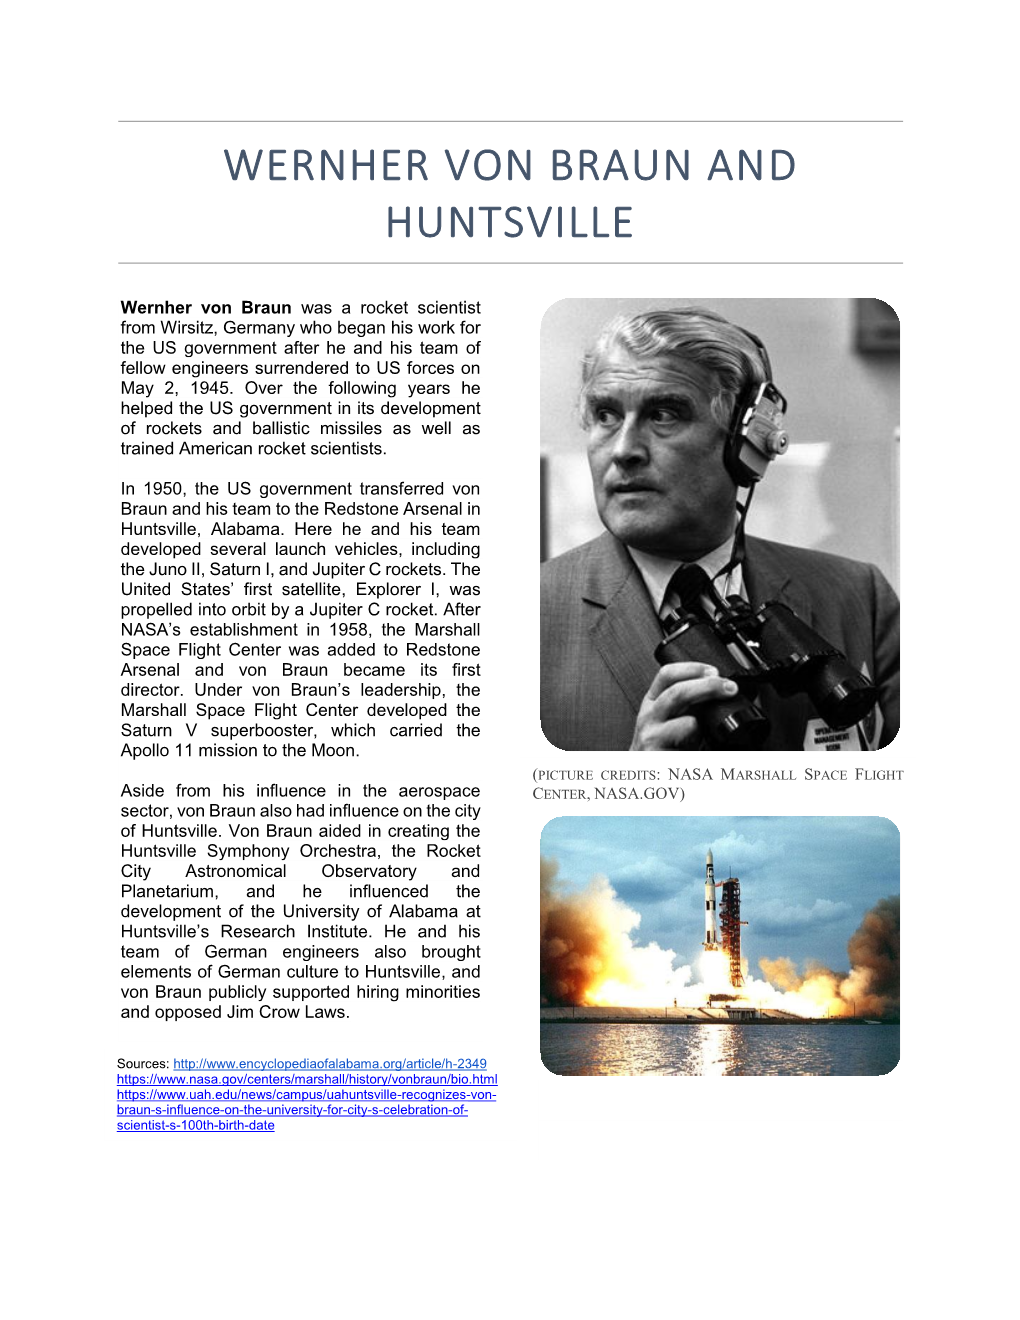 Wernher Von Braun and Huntsville